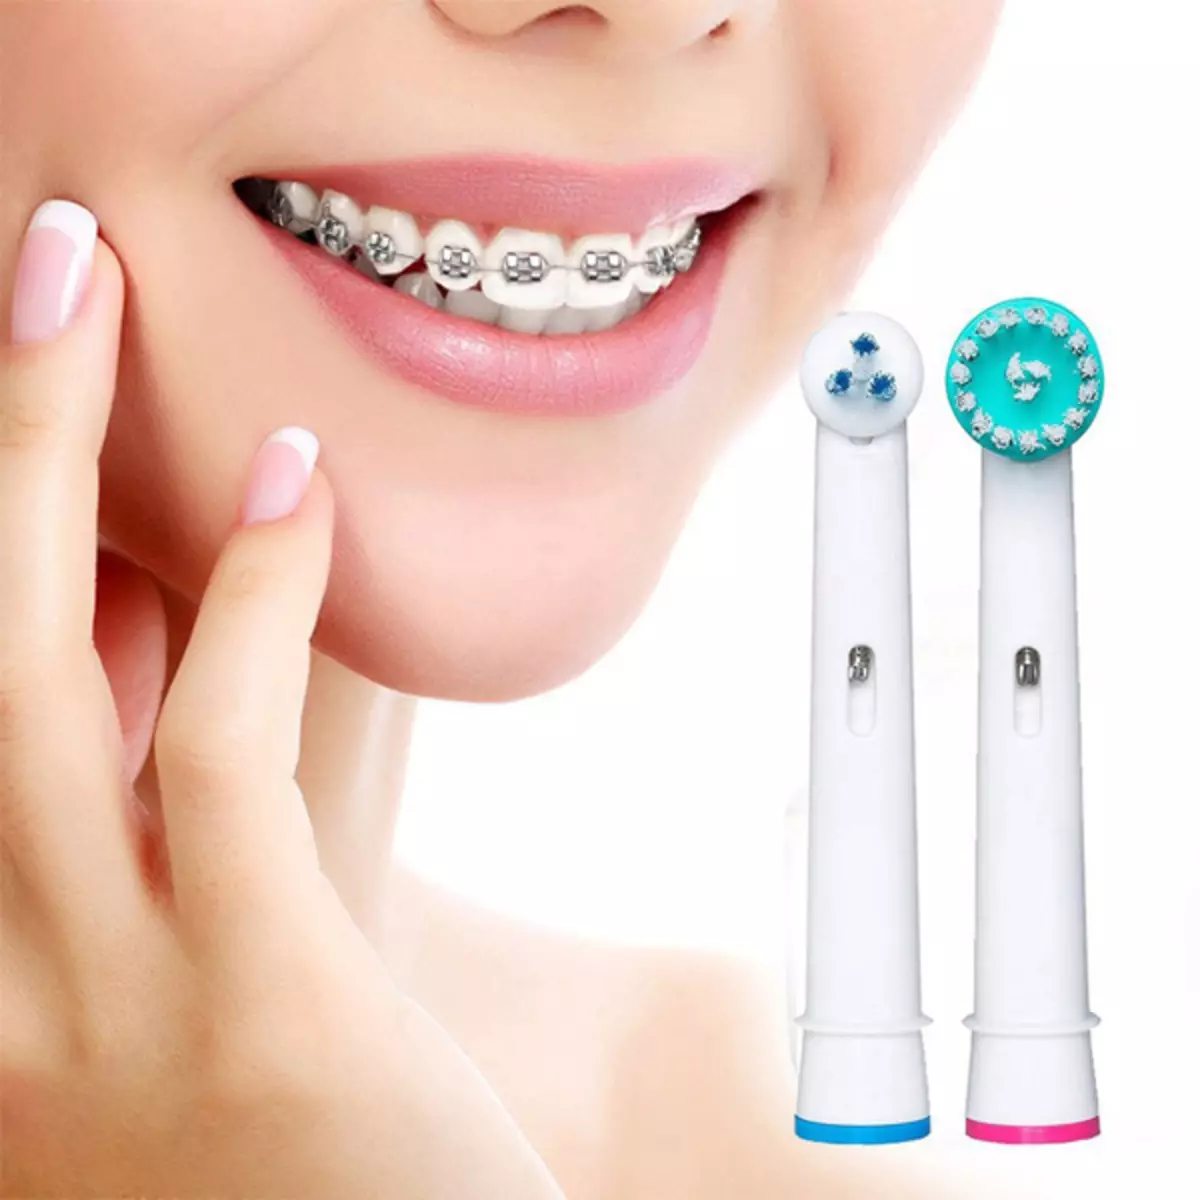 Reitingas geriausių elektrinių dantų šepetėliai: viršų elektroliai dantims, apžvalga prekių ženklų ir modelių palyginimas, geriausi šepečiai pagal stomatologus 24000_6